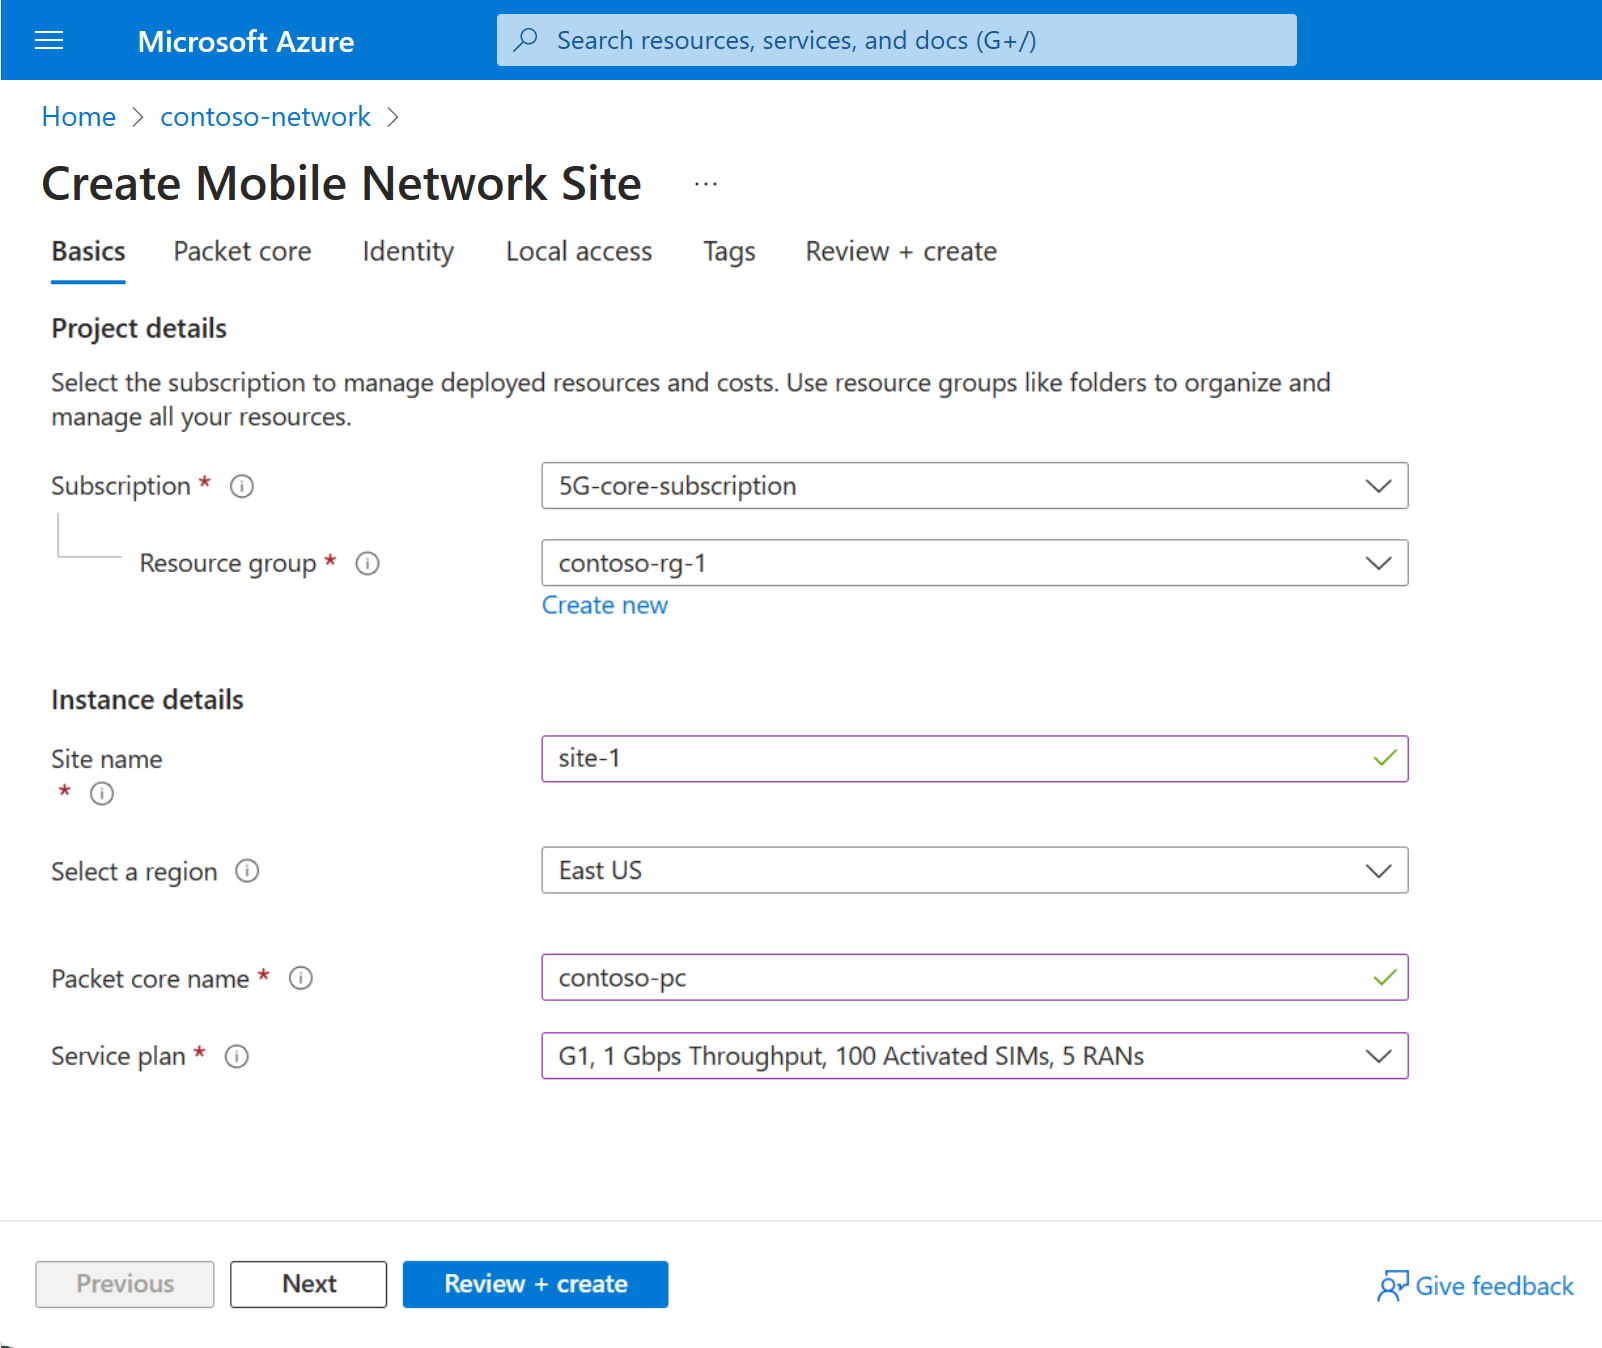 Captura de tela do portal do Azure mostrando a guia de configuração Básicas para um recurso do site.